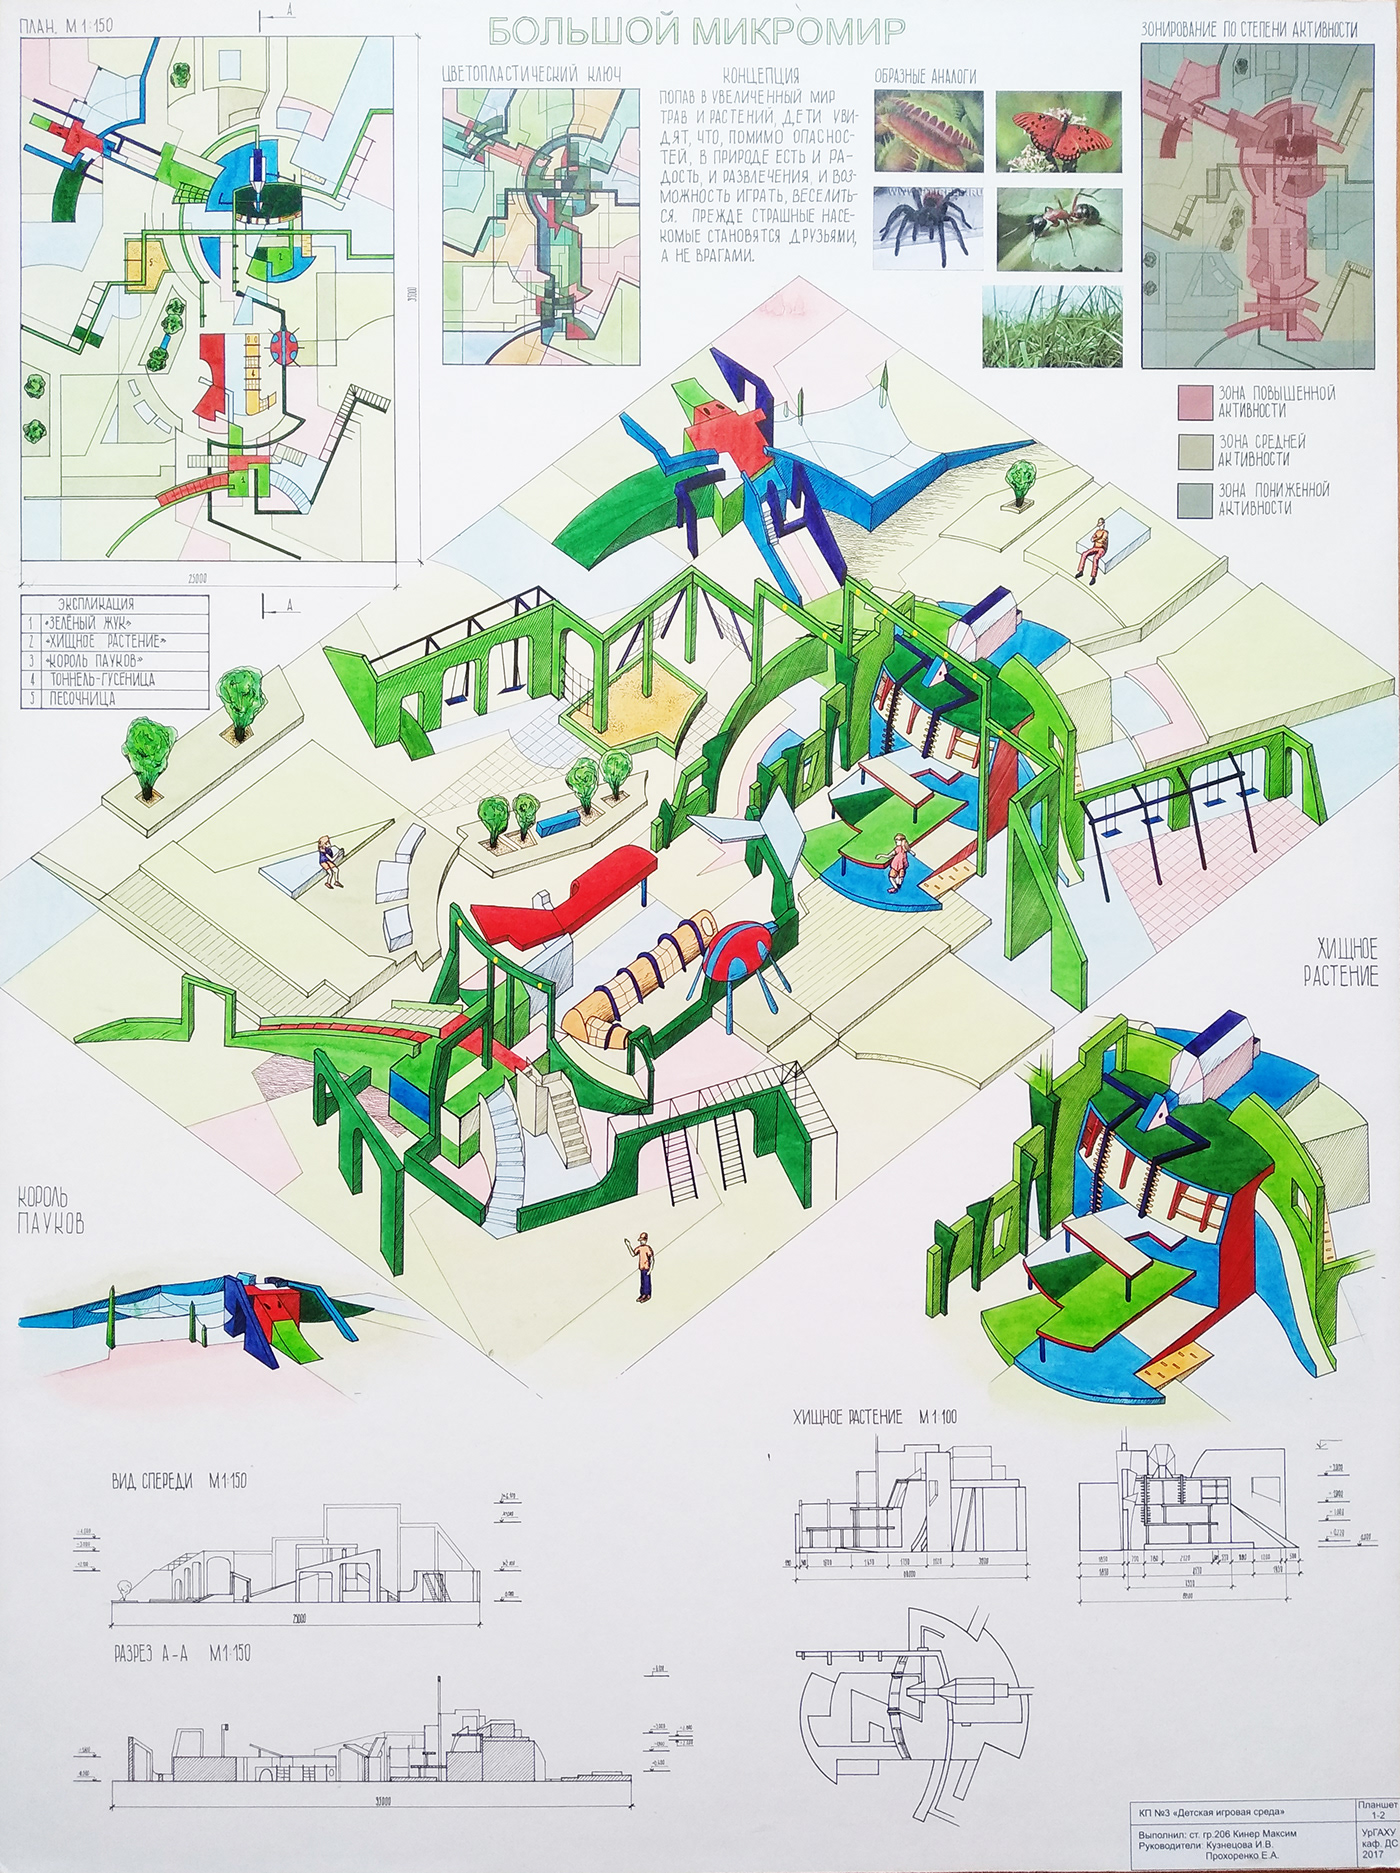 design Environment design детская игровая среда детская площадка дизайн Дизайн среды макет ручная графика урбанизм